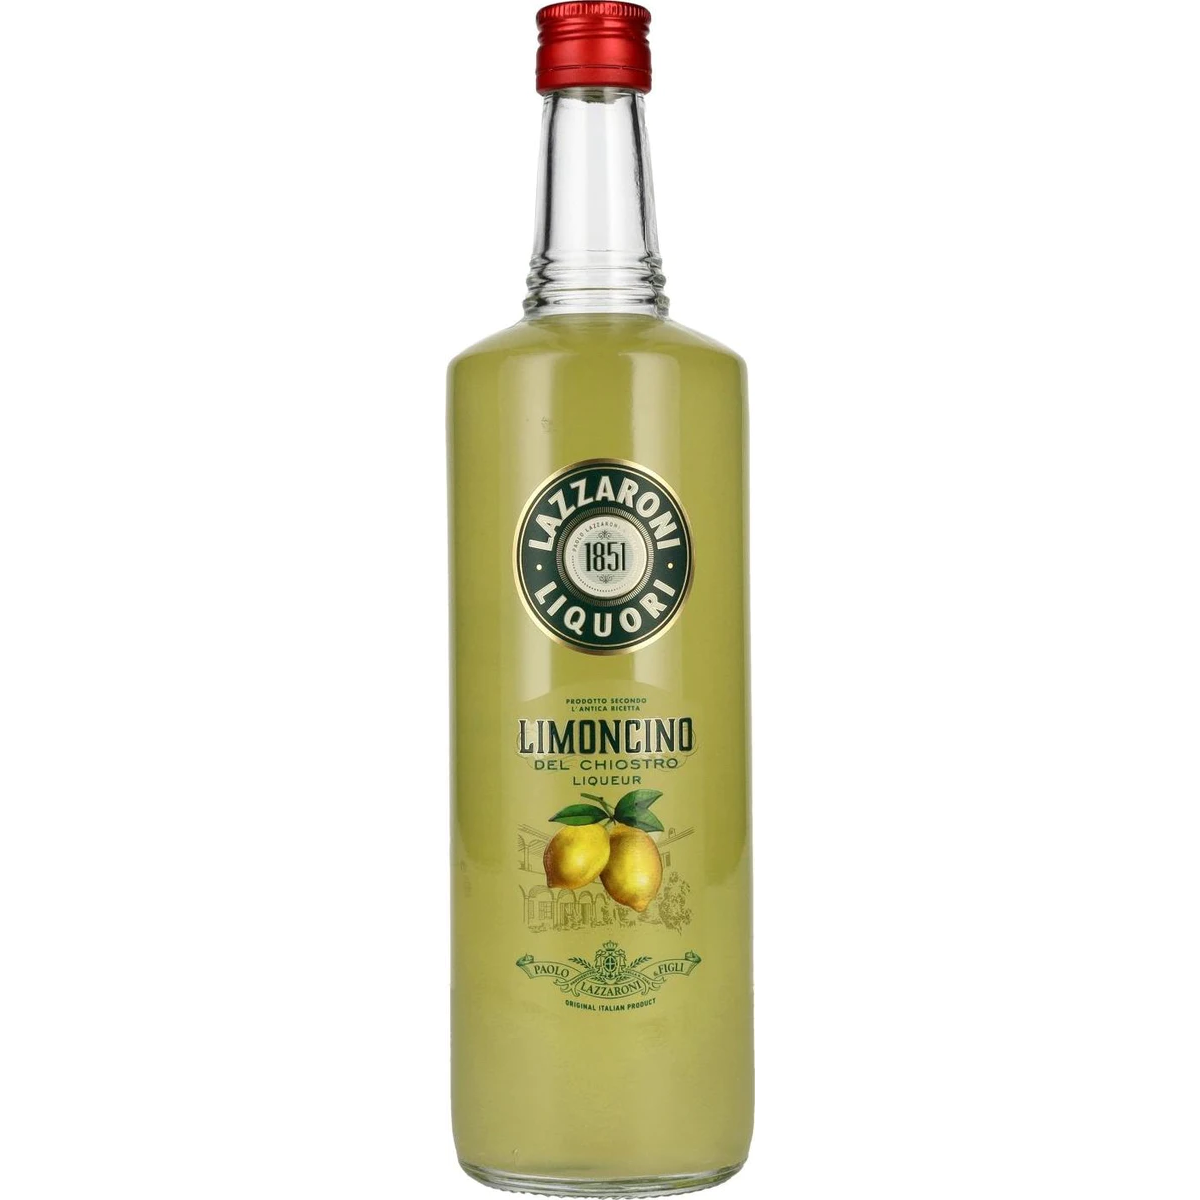 Liquori Chiostro LIMONCINO 1l Liqueur Lazzaroni 28% Vol. del